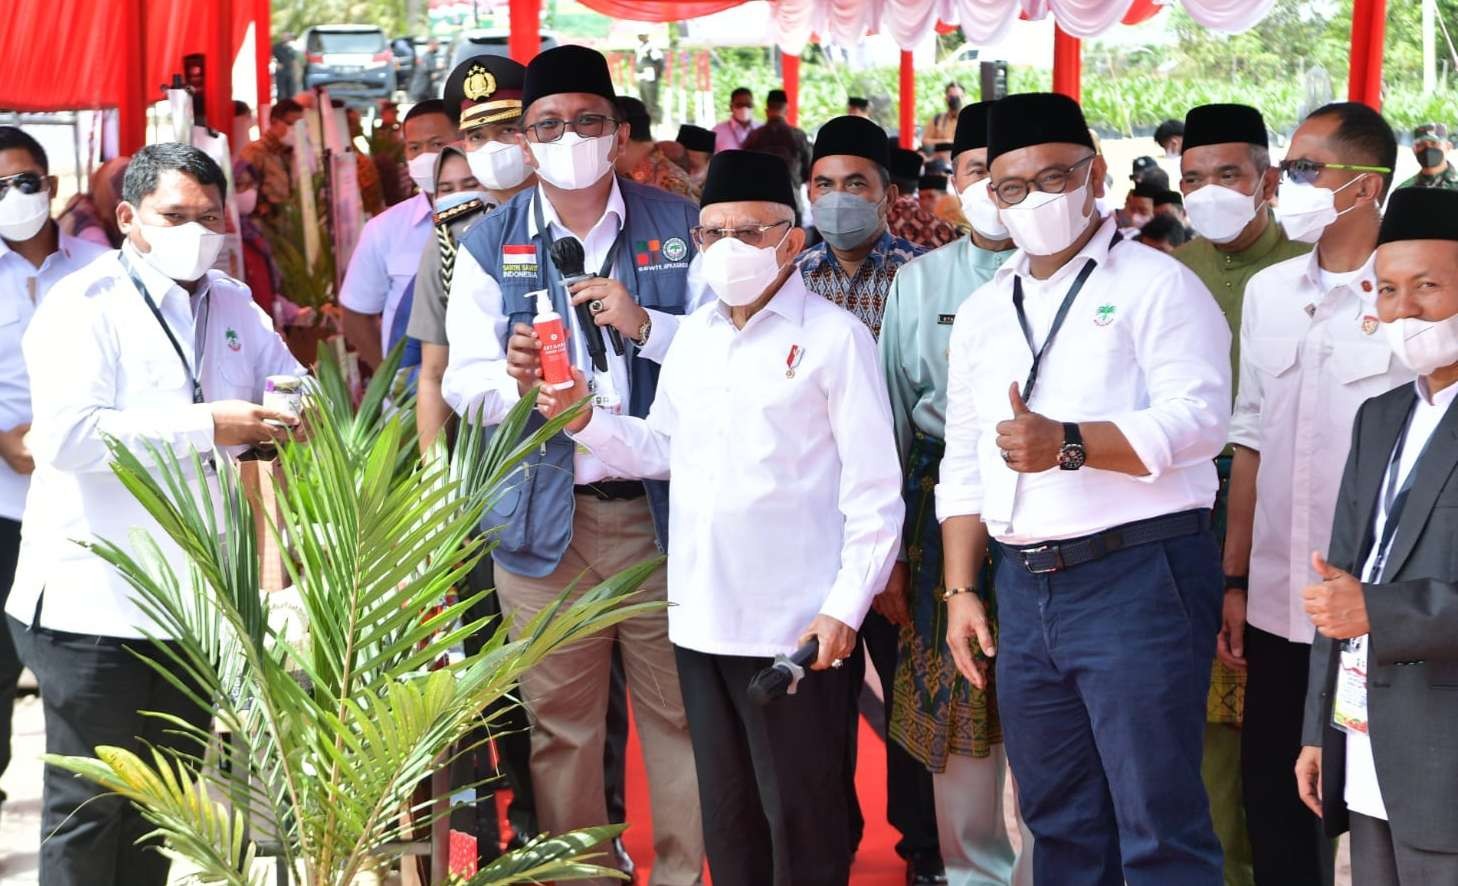 Presiden saksikzan panen perdana pembibitan sawit santri di Riau Pekan Baru (Foto: BPMI Setwapres)